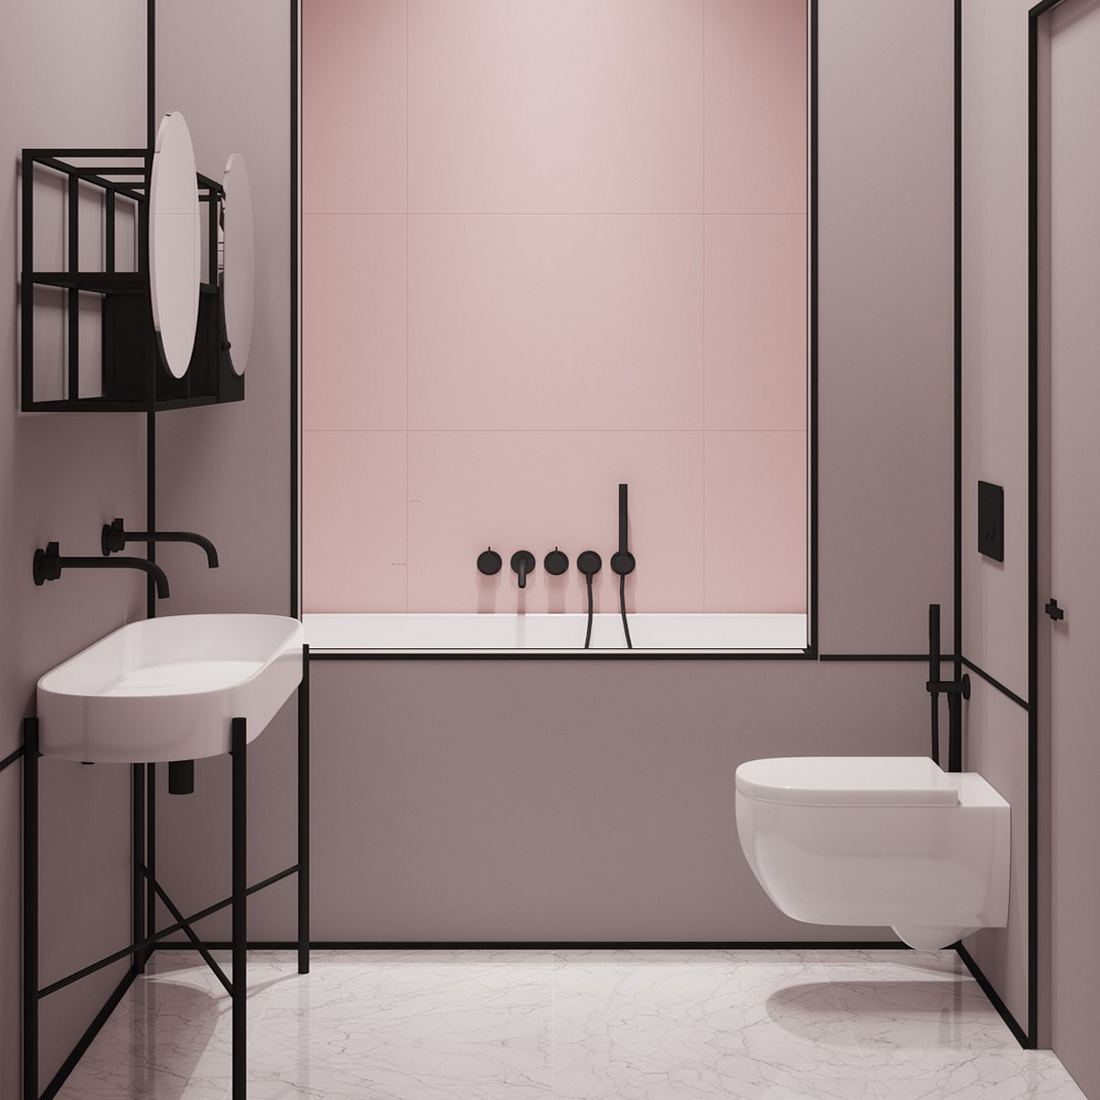 Fekete dekoráció a fürdőben - új fürdőszoba trendek 2020